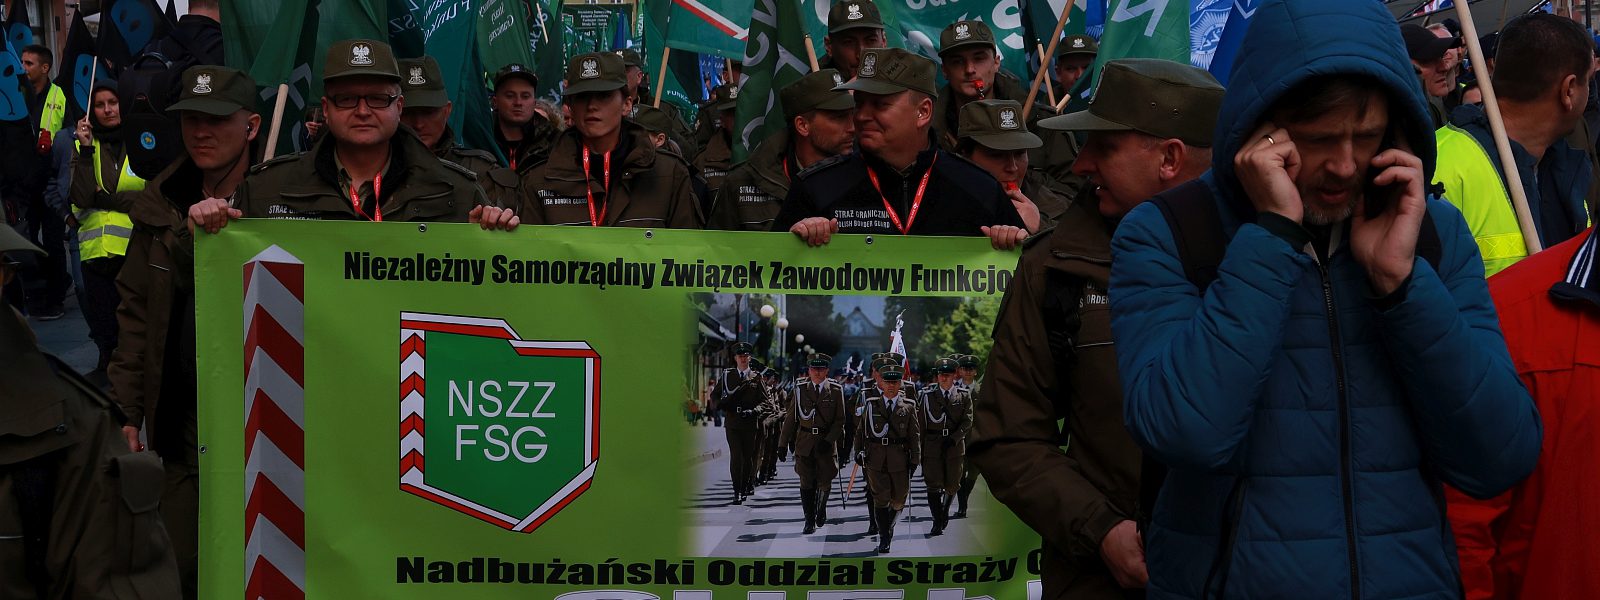 Manfestacja-Straz-Graniczna-Policja-Warszawa-2018- (148)